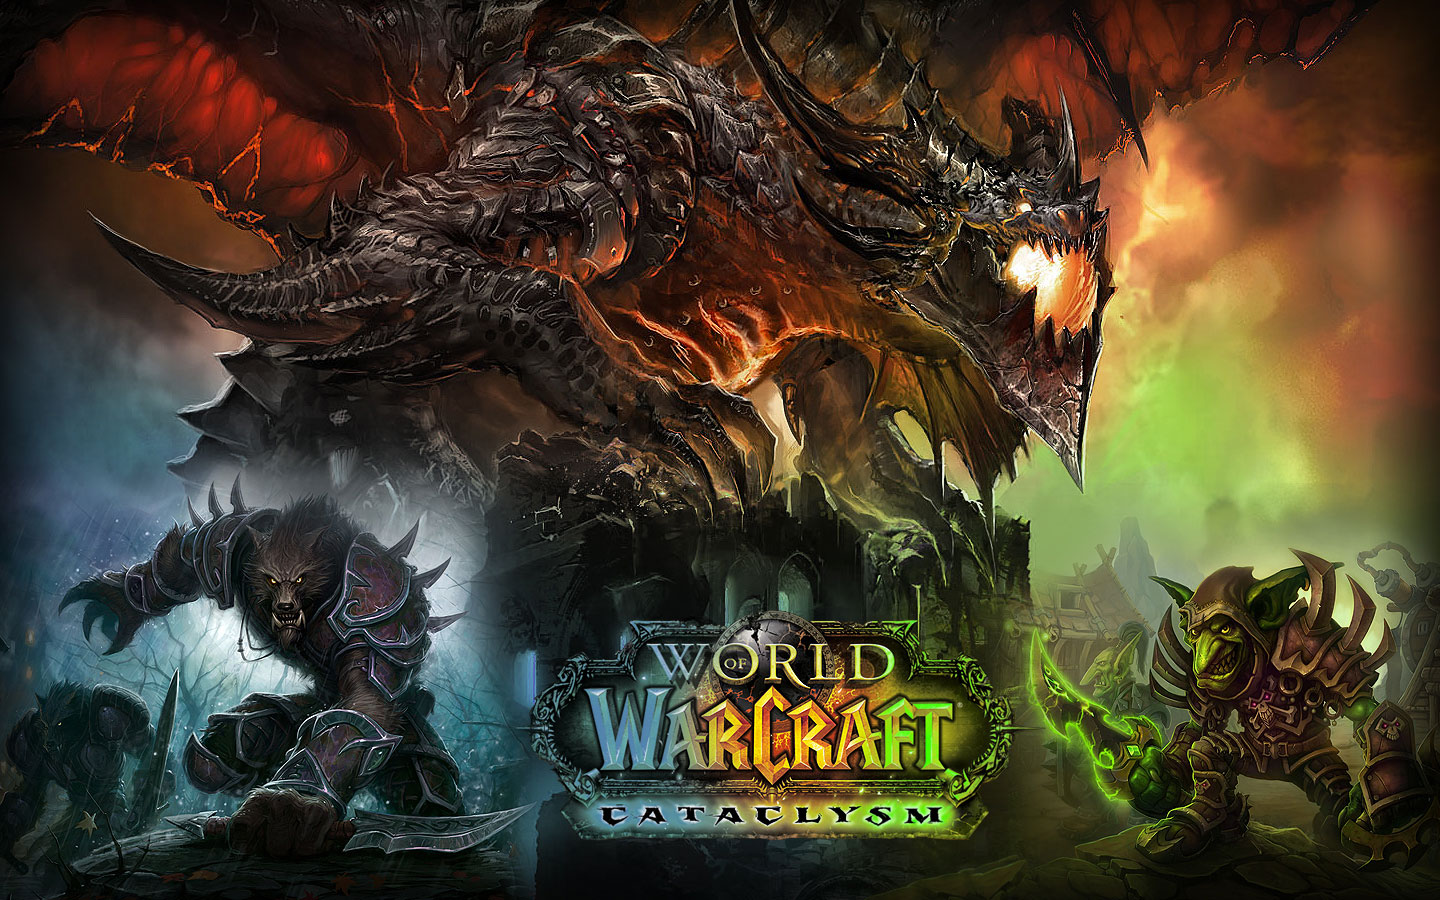 World Of Warcraft: Cataclysm HD wallpapers, Desktop wallpaper - most viewed